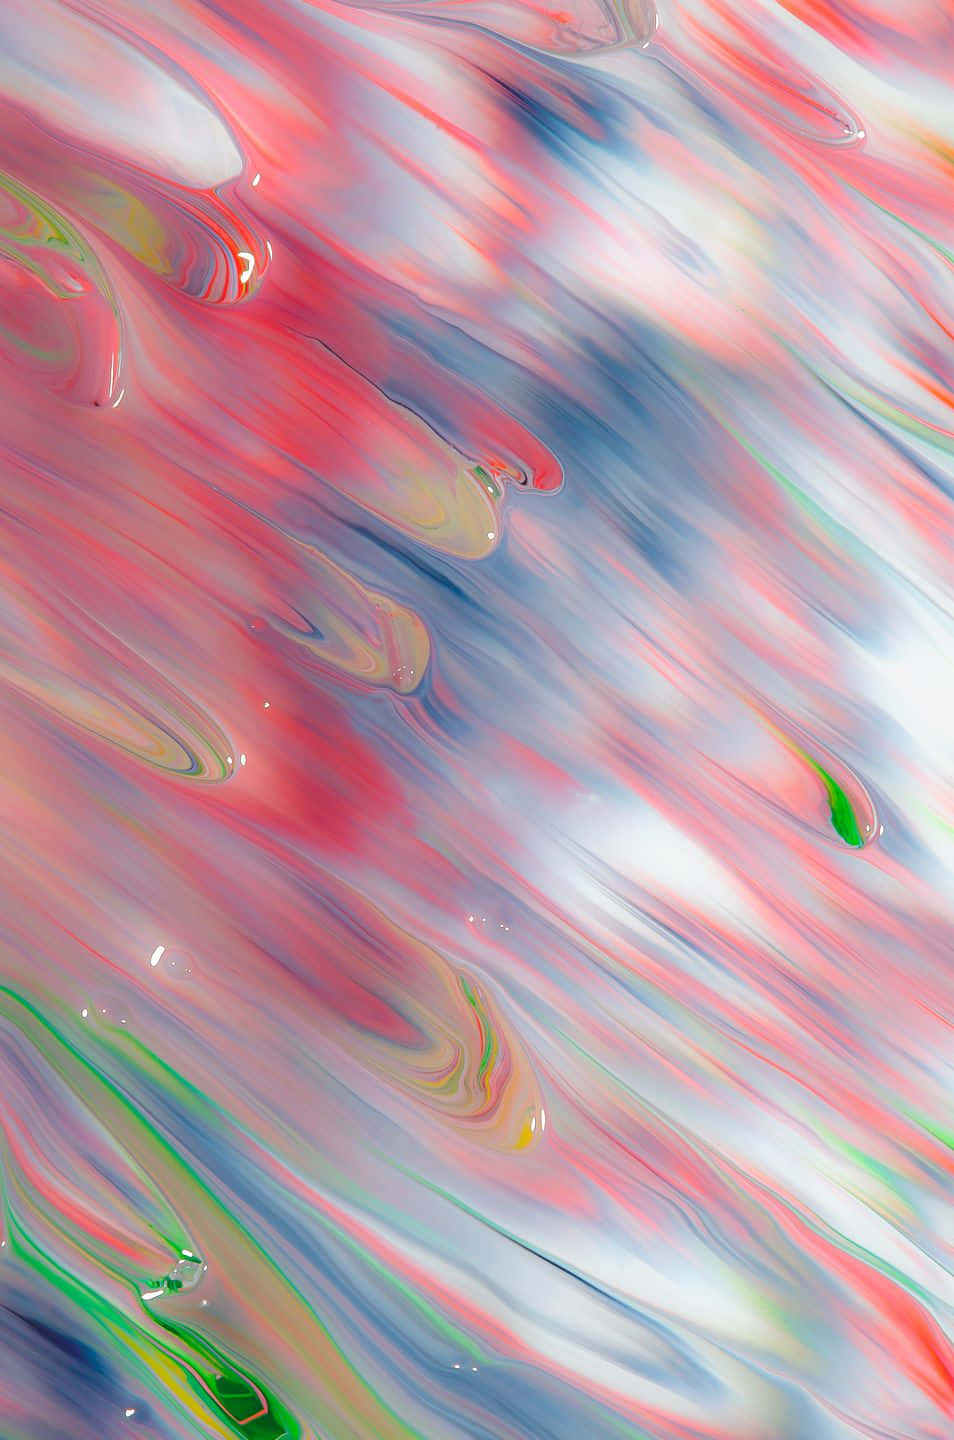 Aesthetic Instagram Abstract Liquid Wallpaper